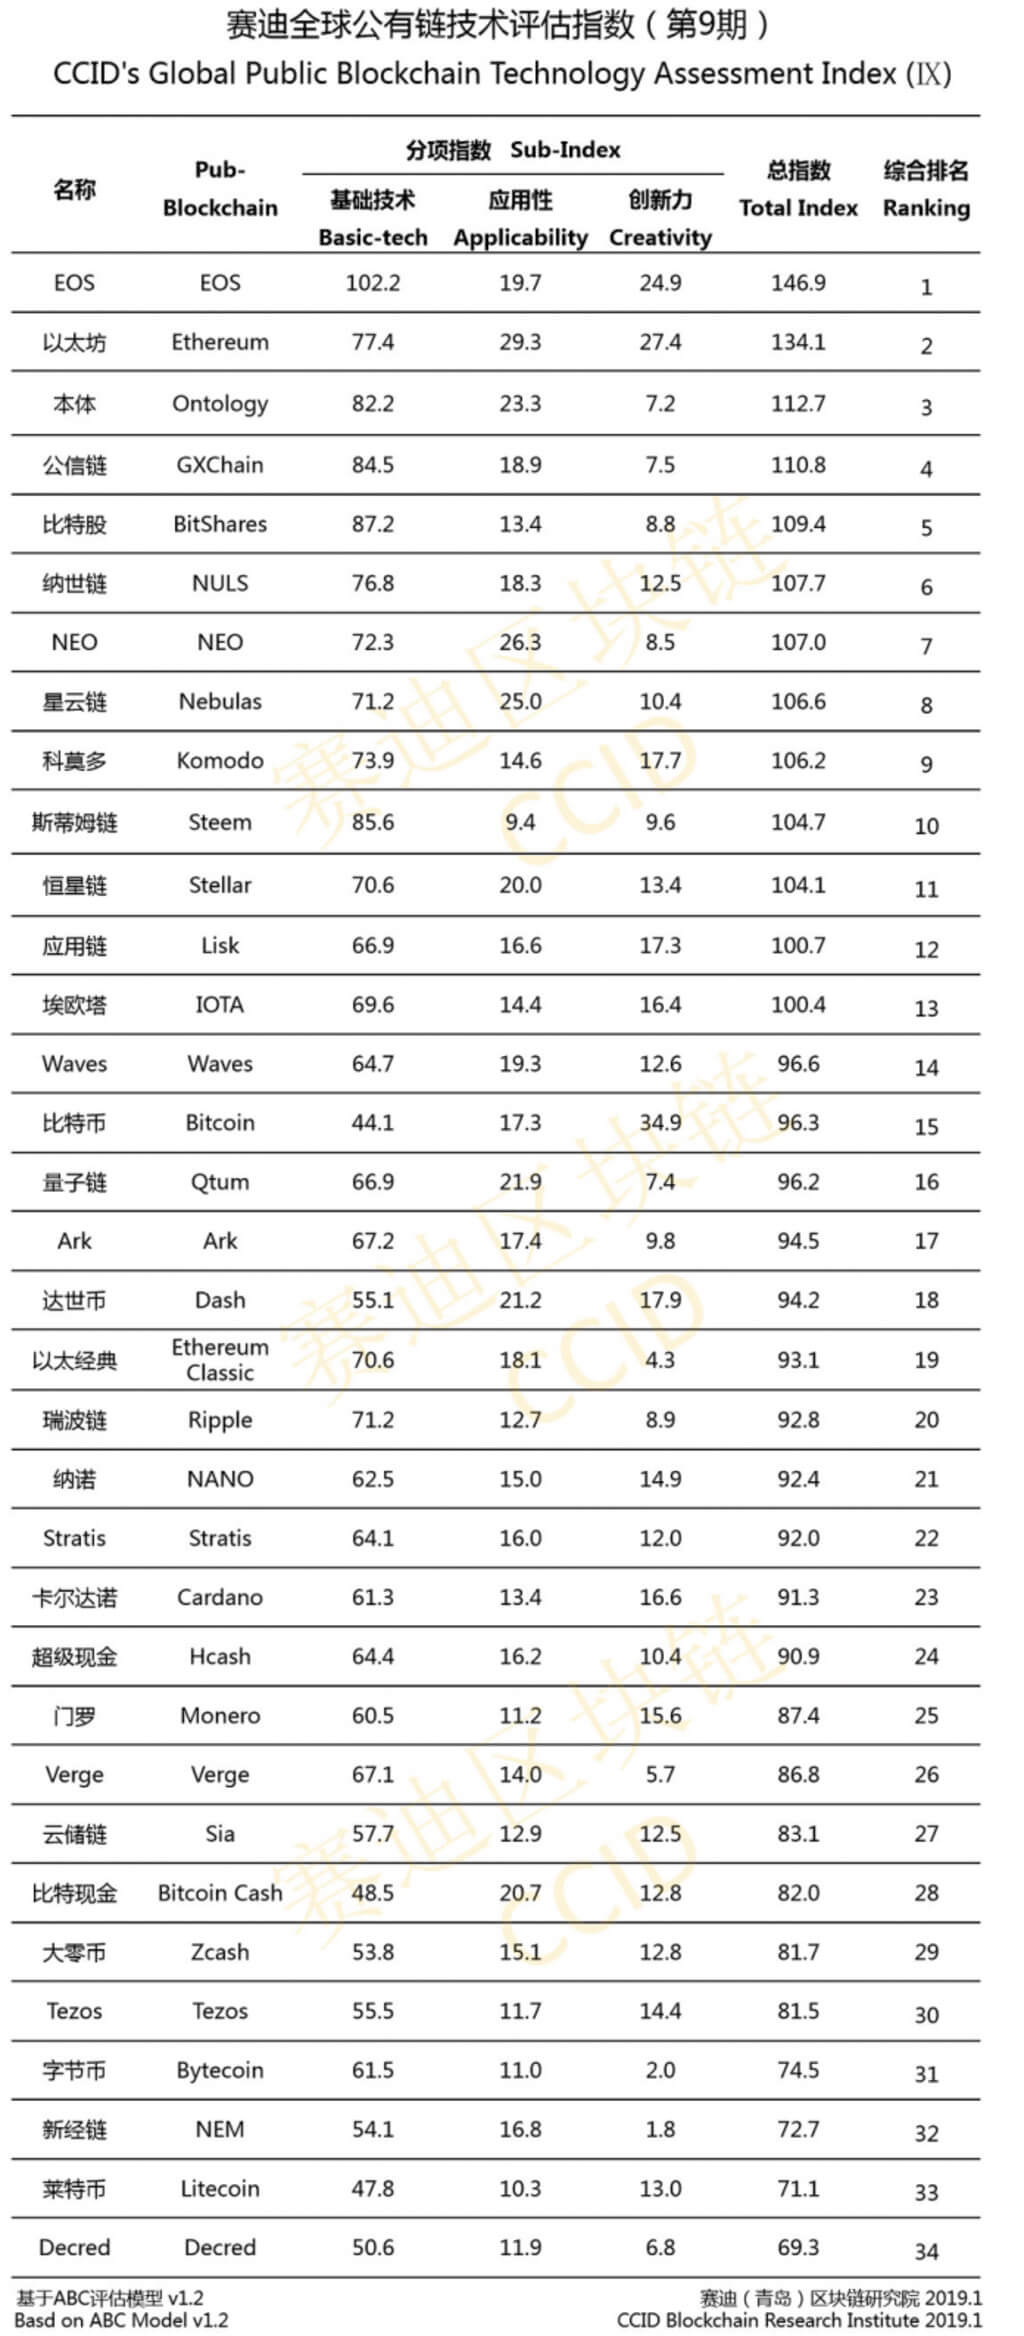 चीन अद्यतन अपनी रैंकिंग के cryptocurrencies. Bitcoin कूद गया